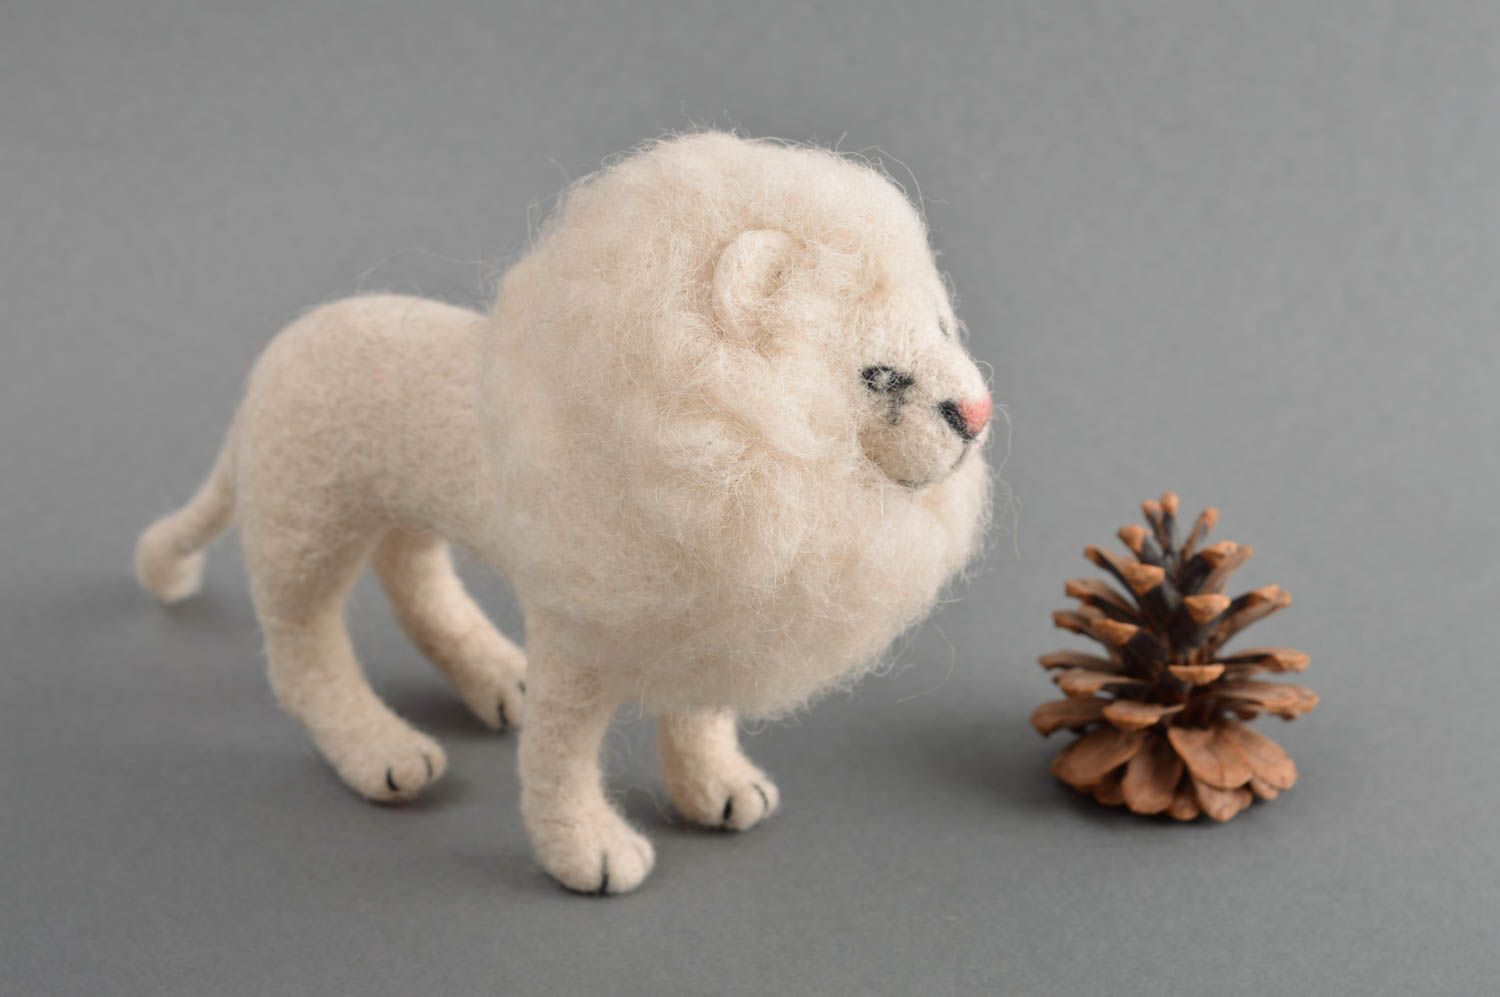 Валяная игрушка ручной работы мягкая игрушка детская шерстяная игрушка Белый лев фото 1